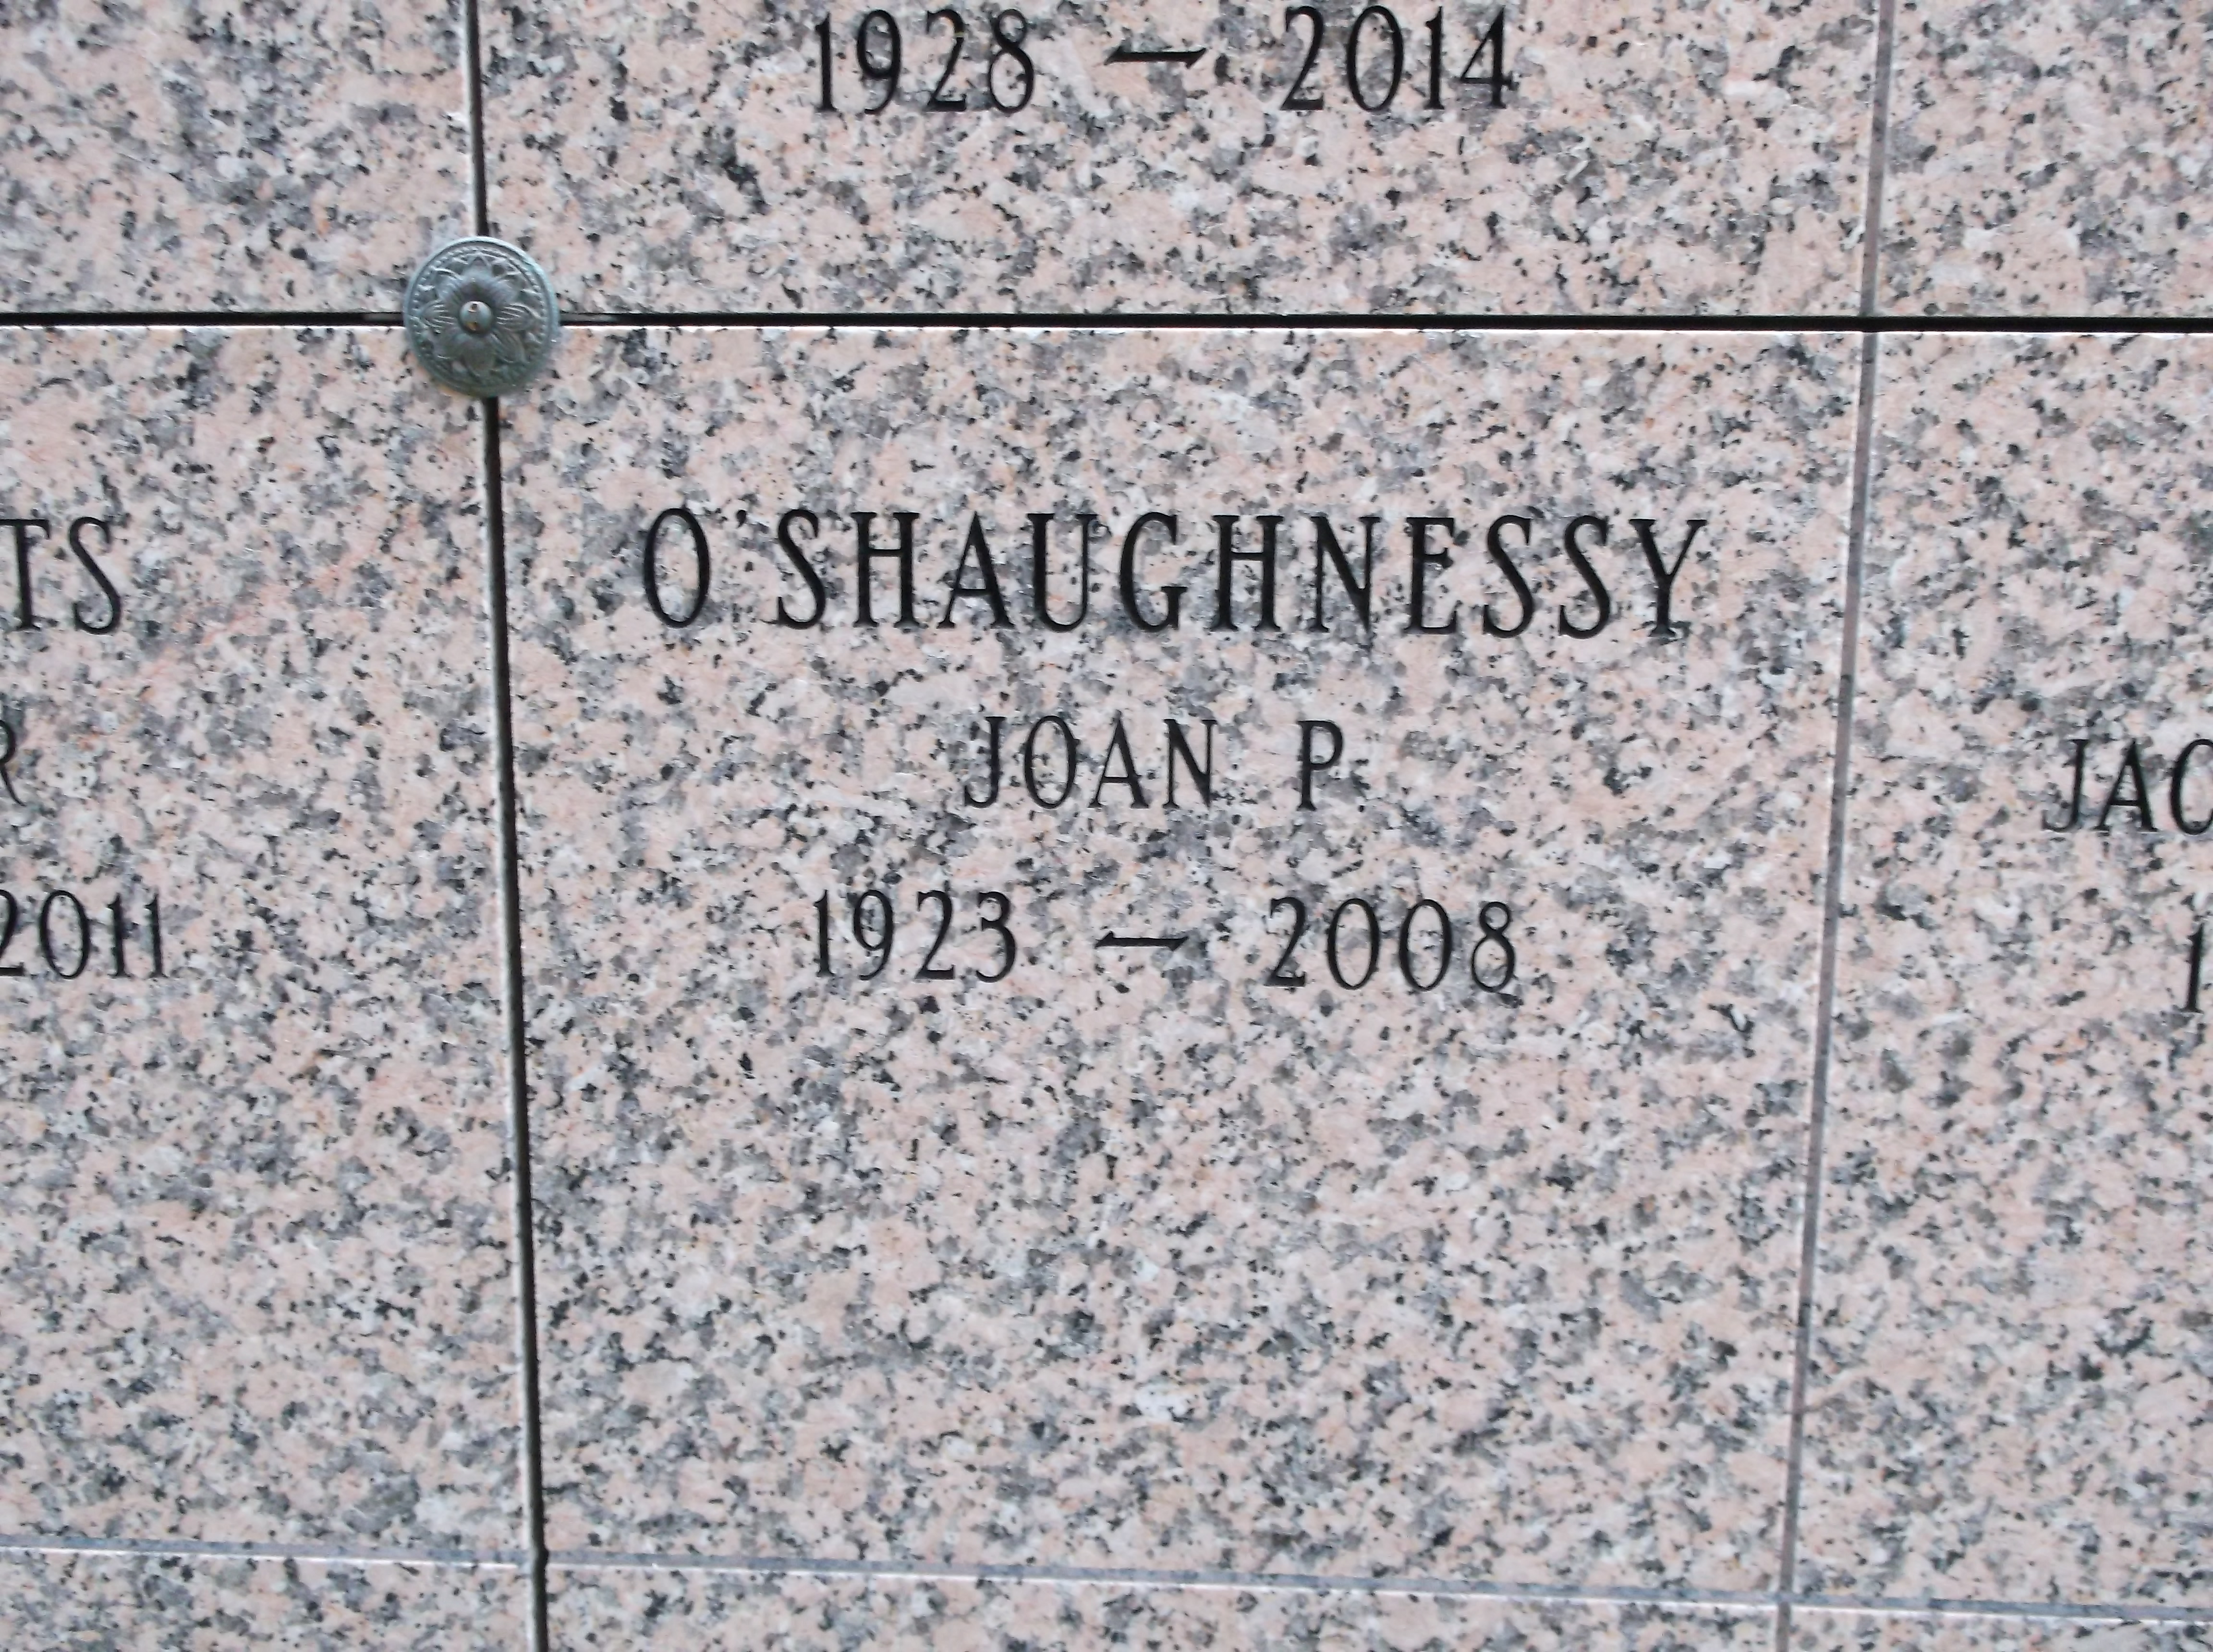 Joan P O'Shaughnessy